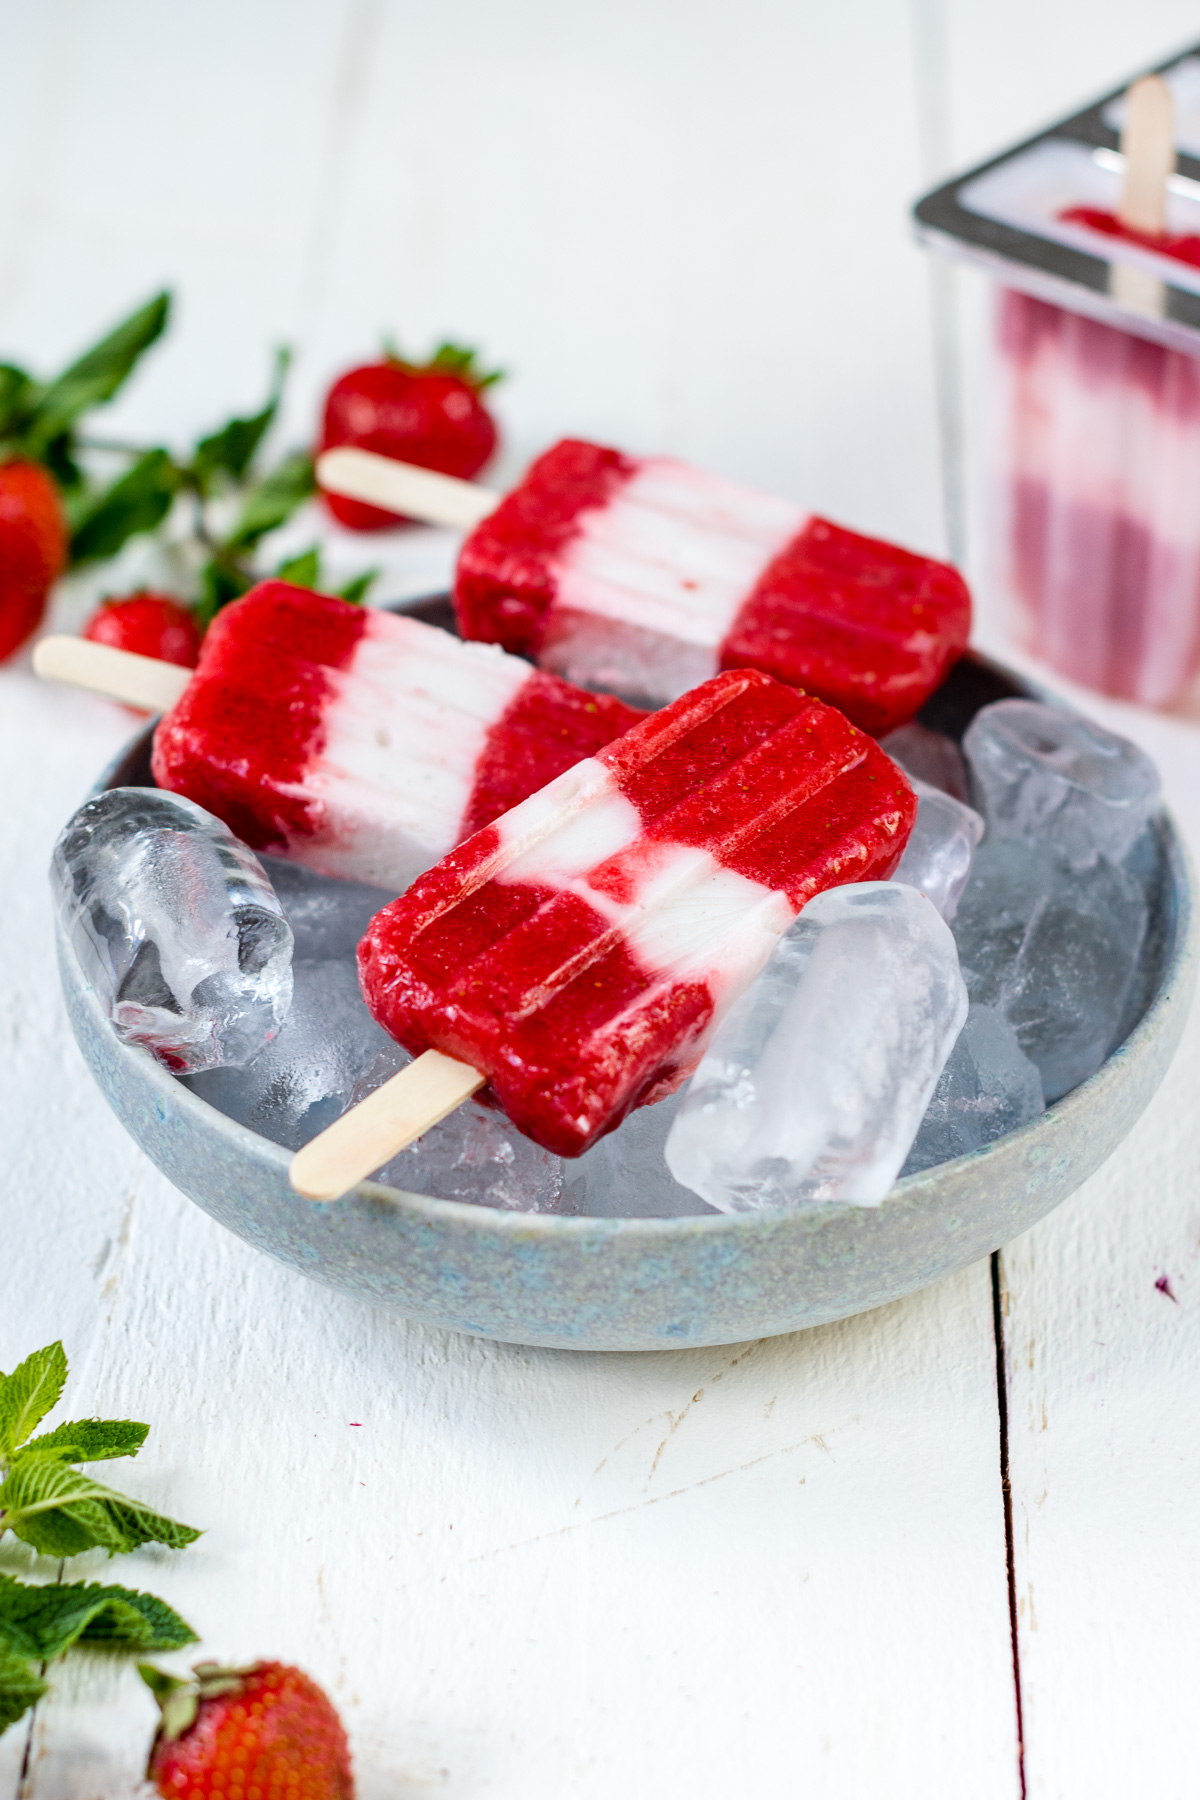 selbstgemachte Erdbeer Joghurt Popsicles in einer Schale mit Eiswürfeln.